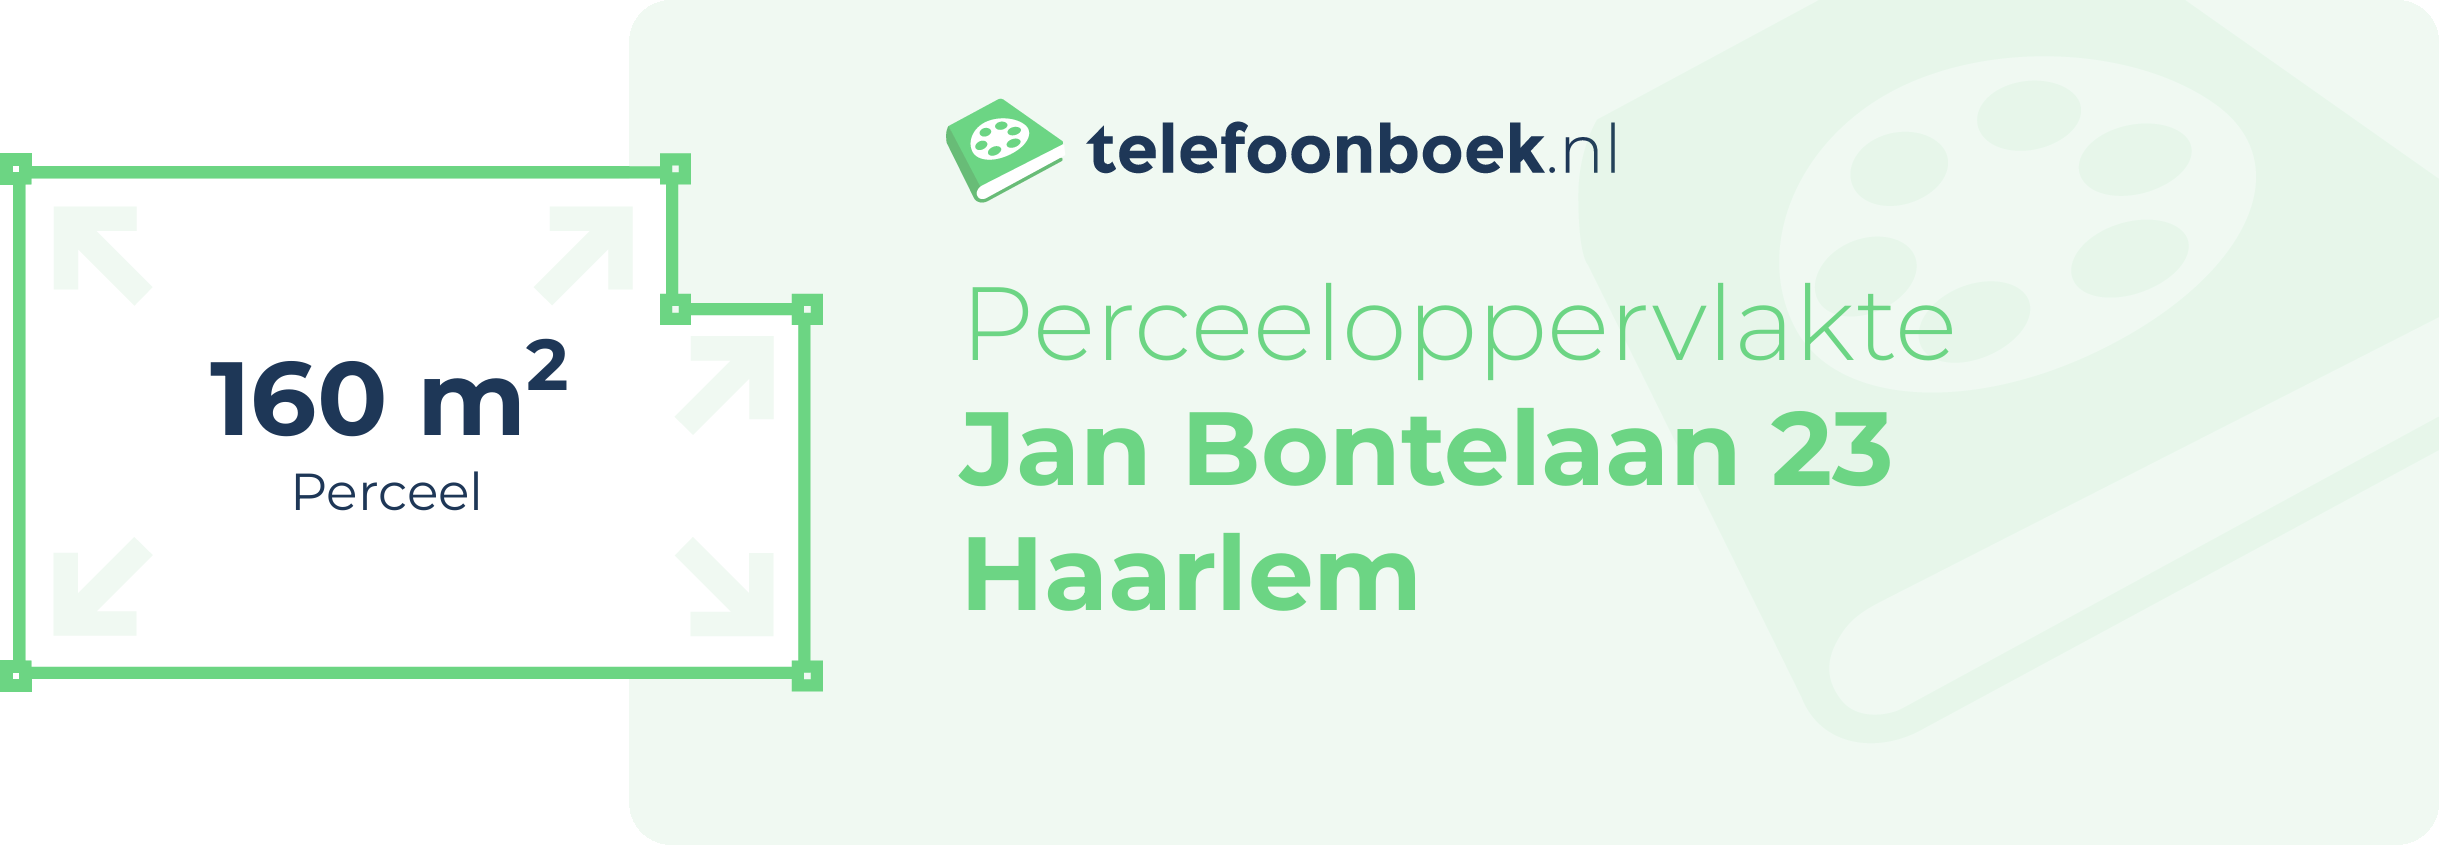 Perceeloppervlakte Jan Bontelaan 23 Haarlem